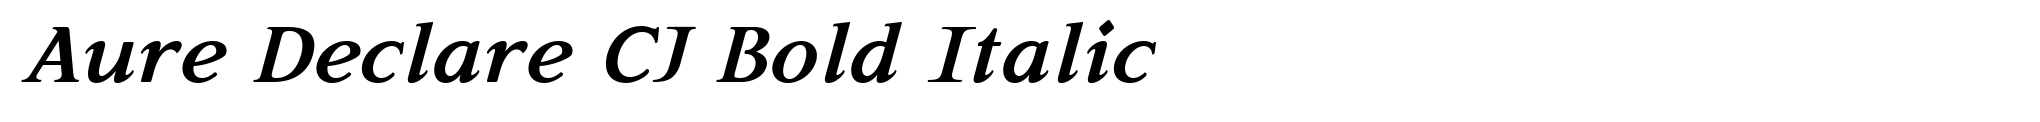 Aure Declare CJ Bold Italic image